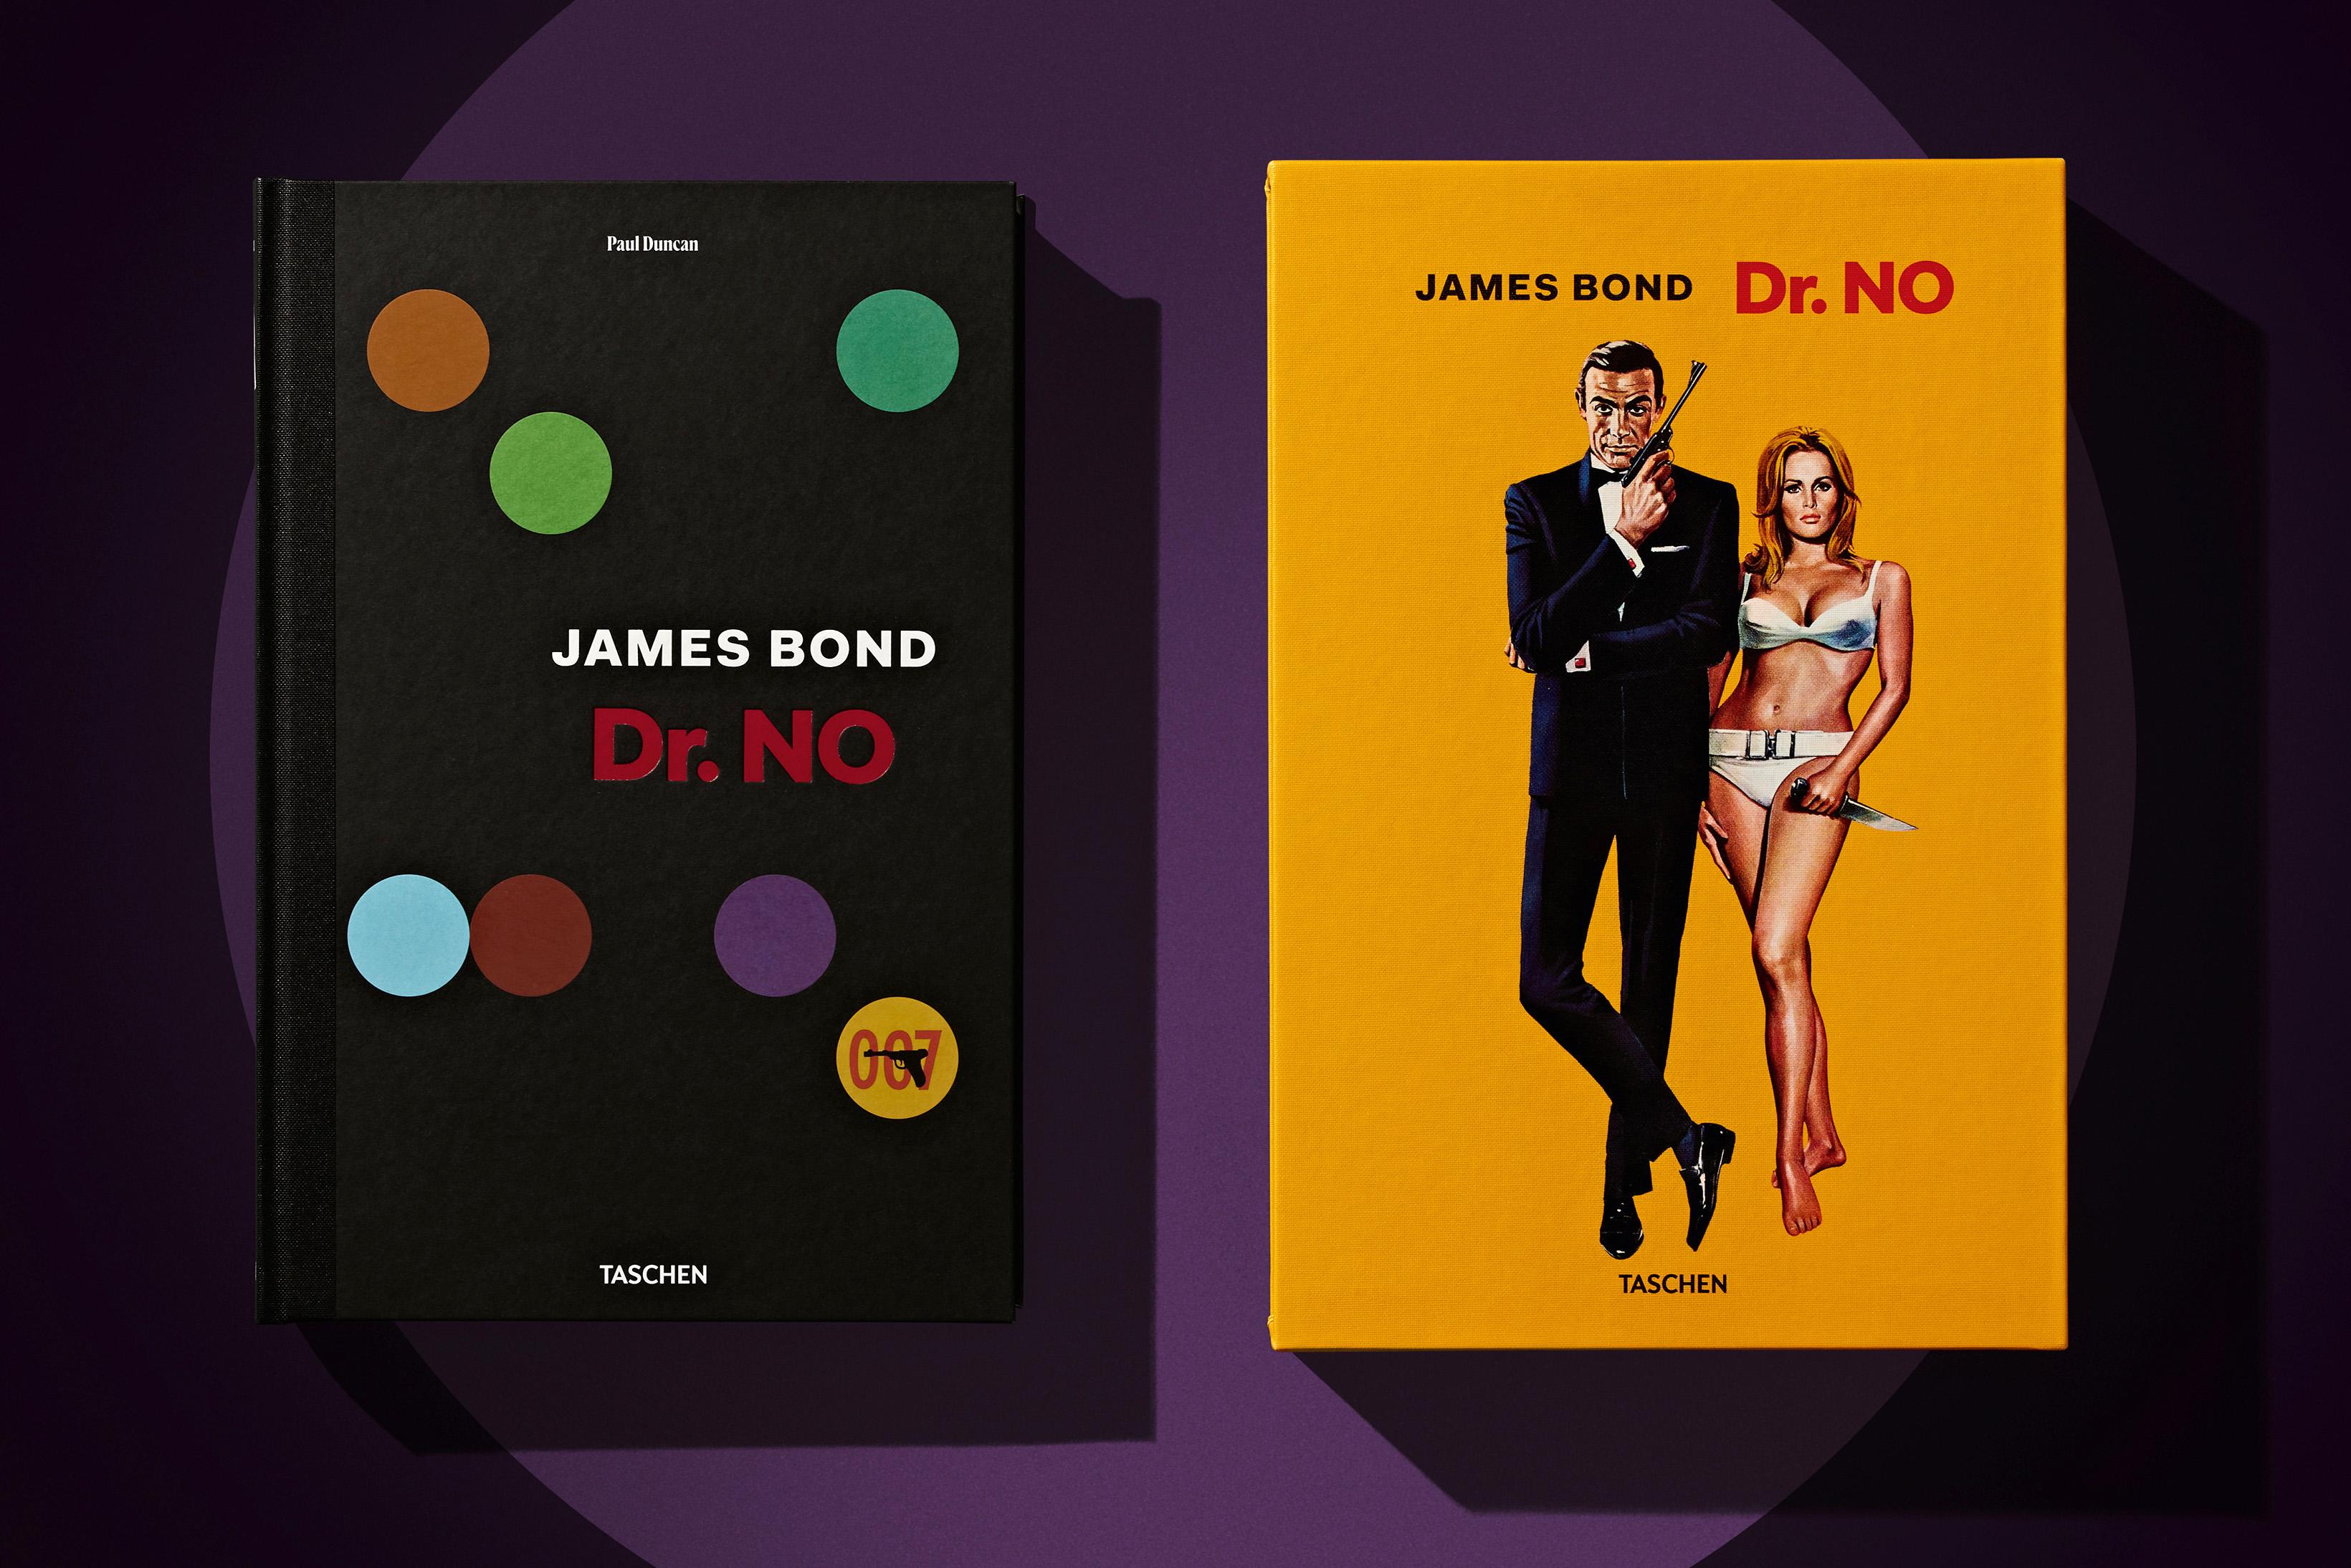 La naissance du Bond cinématographique.

Le récit le plus complet du tournage du premier James Bond, Dr. No (1962).

